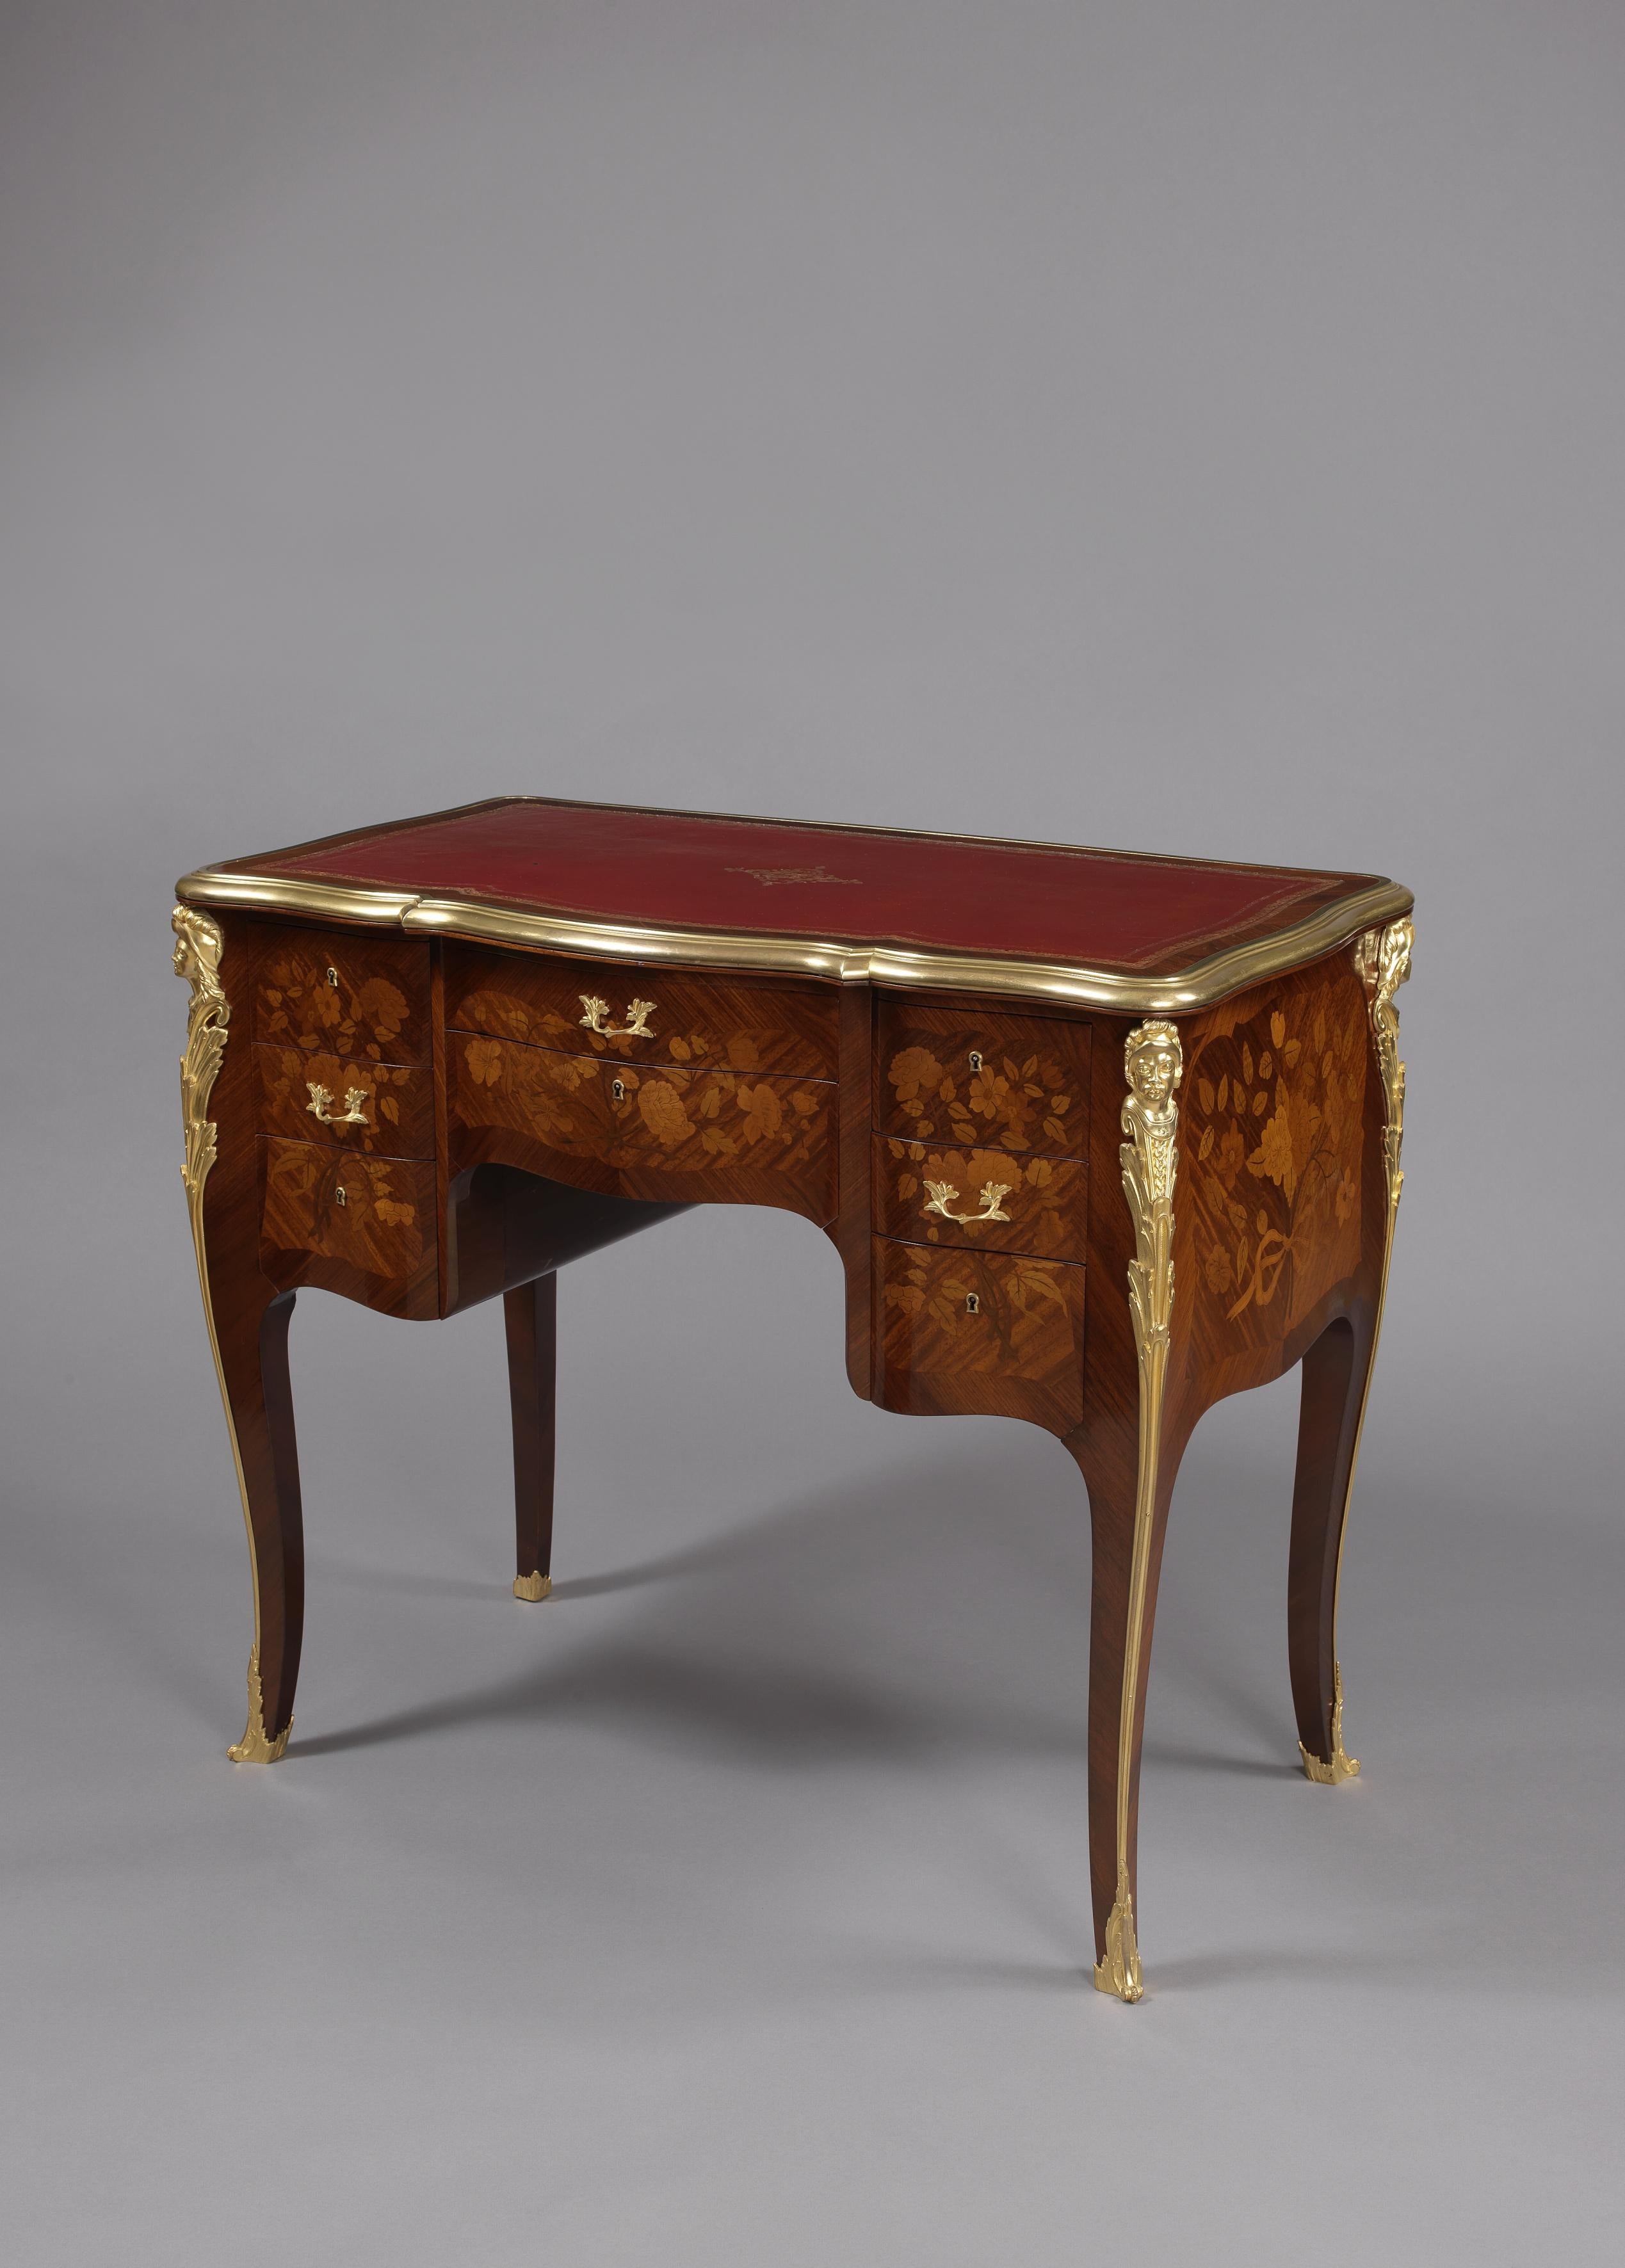 Ein seltenes und ungewöhnliches Bureau de Dame von François Linke im Stil von Louis XV mit Goldbronze und Intarsien.

Frankreich, um 1890.

Signiert auf dem Goldbronzerand 